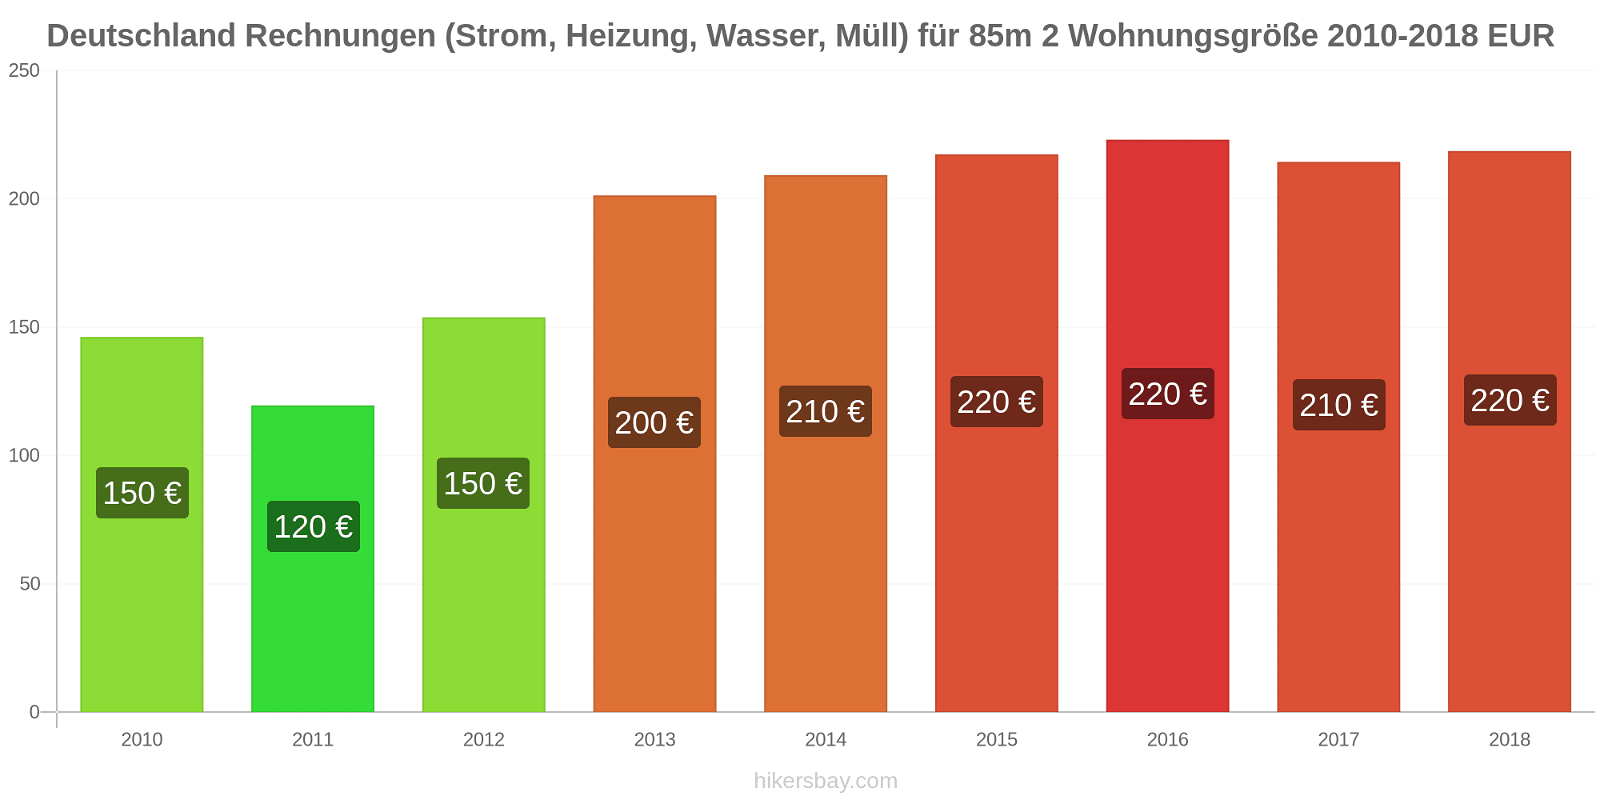 Deutschland Preisänderungen Kosten (Strom, Heizung, Wasser, Müll) für eine 85m2 große Wohnung hikersbay.com